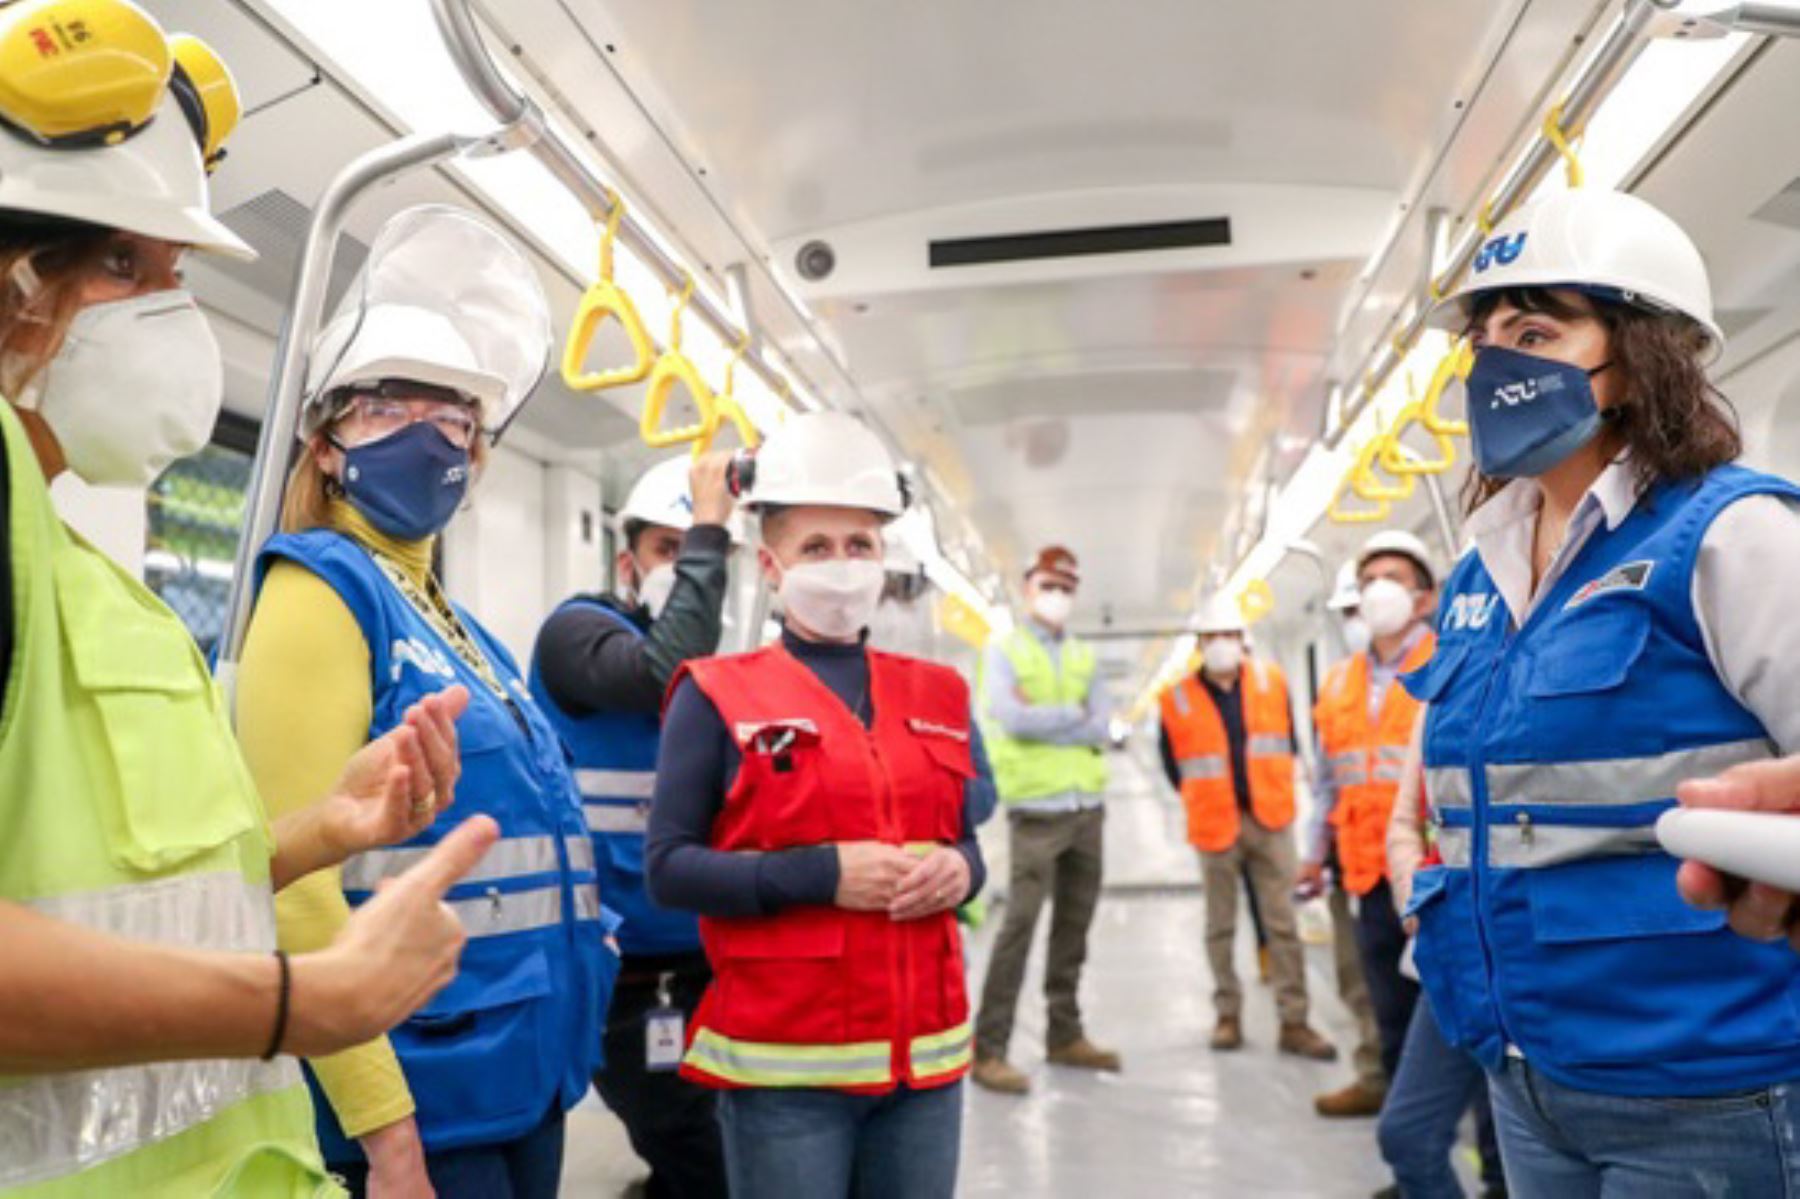 La Línea 2 será un corredor ferroviario subterráneo de 26.87 kilómetros con 27 estaciones. Transportará a 1,200 personas por viaje y atravesará 10 distritos de la ciudad. Foto: ANDINA/ATU